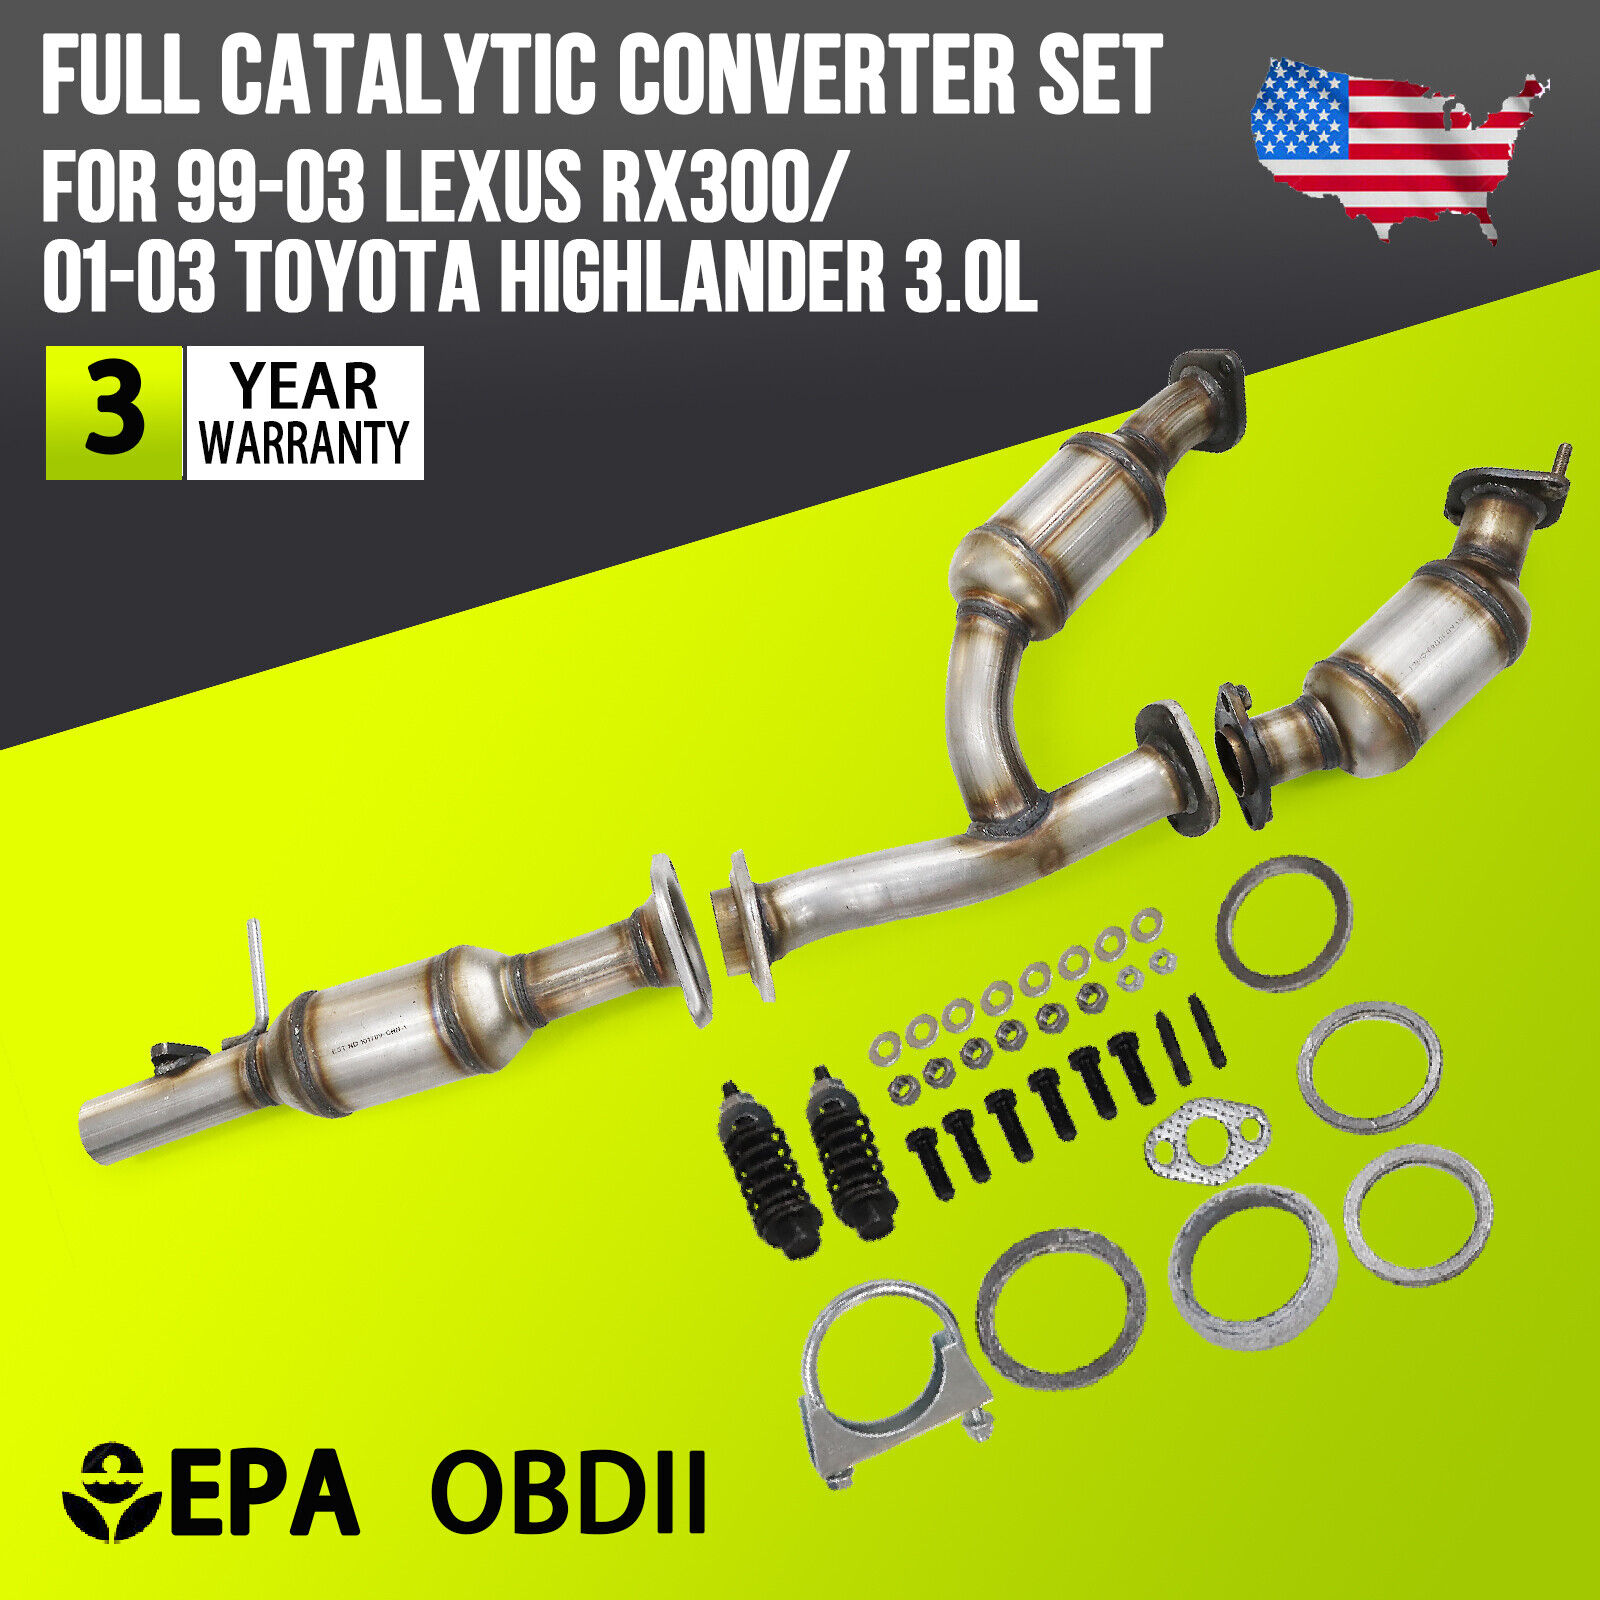 Full Catalytic Converter Set for 99-03 Lexus RX300/01-03 Toyota Highlander 3.0L